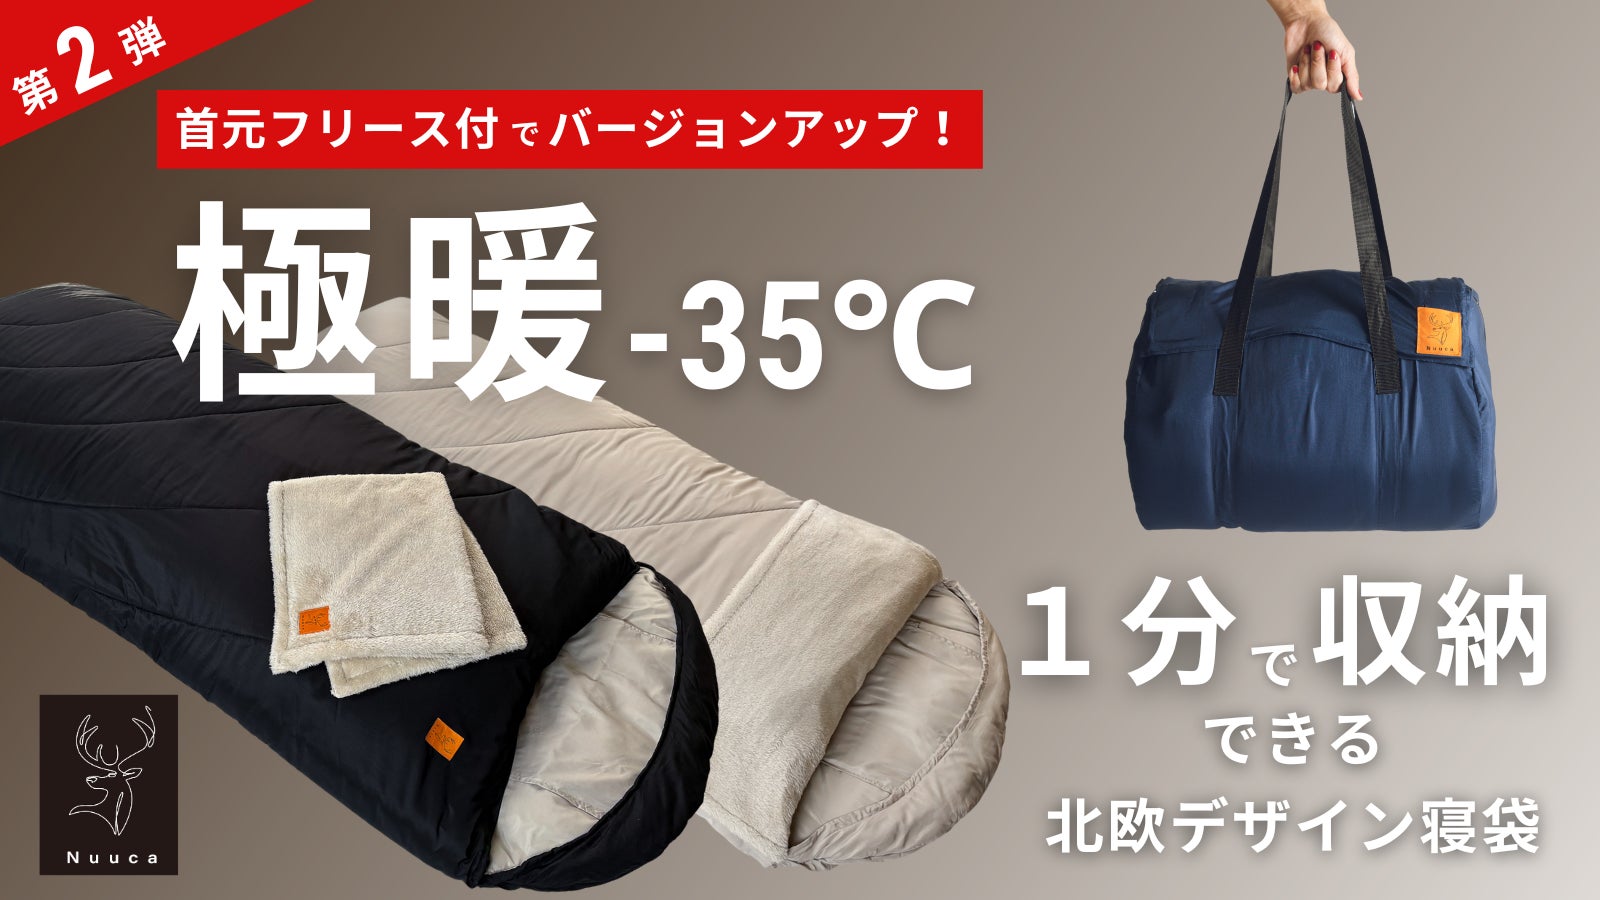 冬キャンプから自宅での暖房費の高騰対策、帰省時の布団、万一の災害時にまで使える、極暖-35℃「北欧デザインの寝袋」のクラウドファンディングを開始のサブ画像1